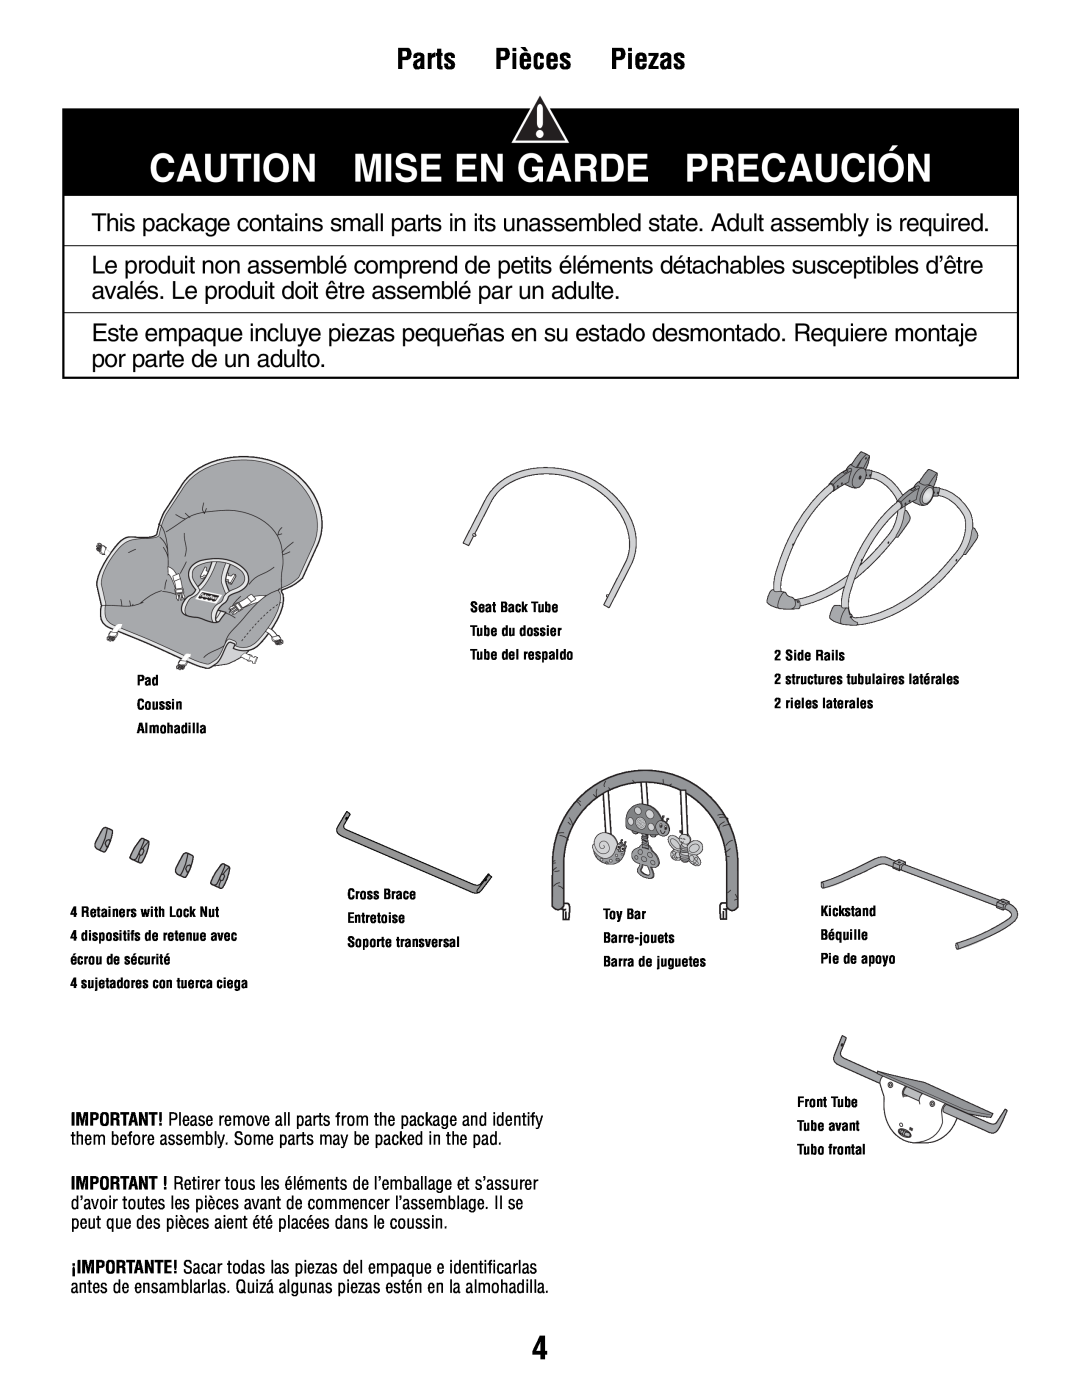 Fisher-Price P3334 manual Caution Mise En Garde Precaución, Parts Pièces Piezas 